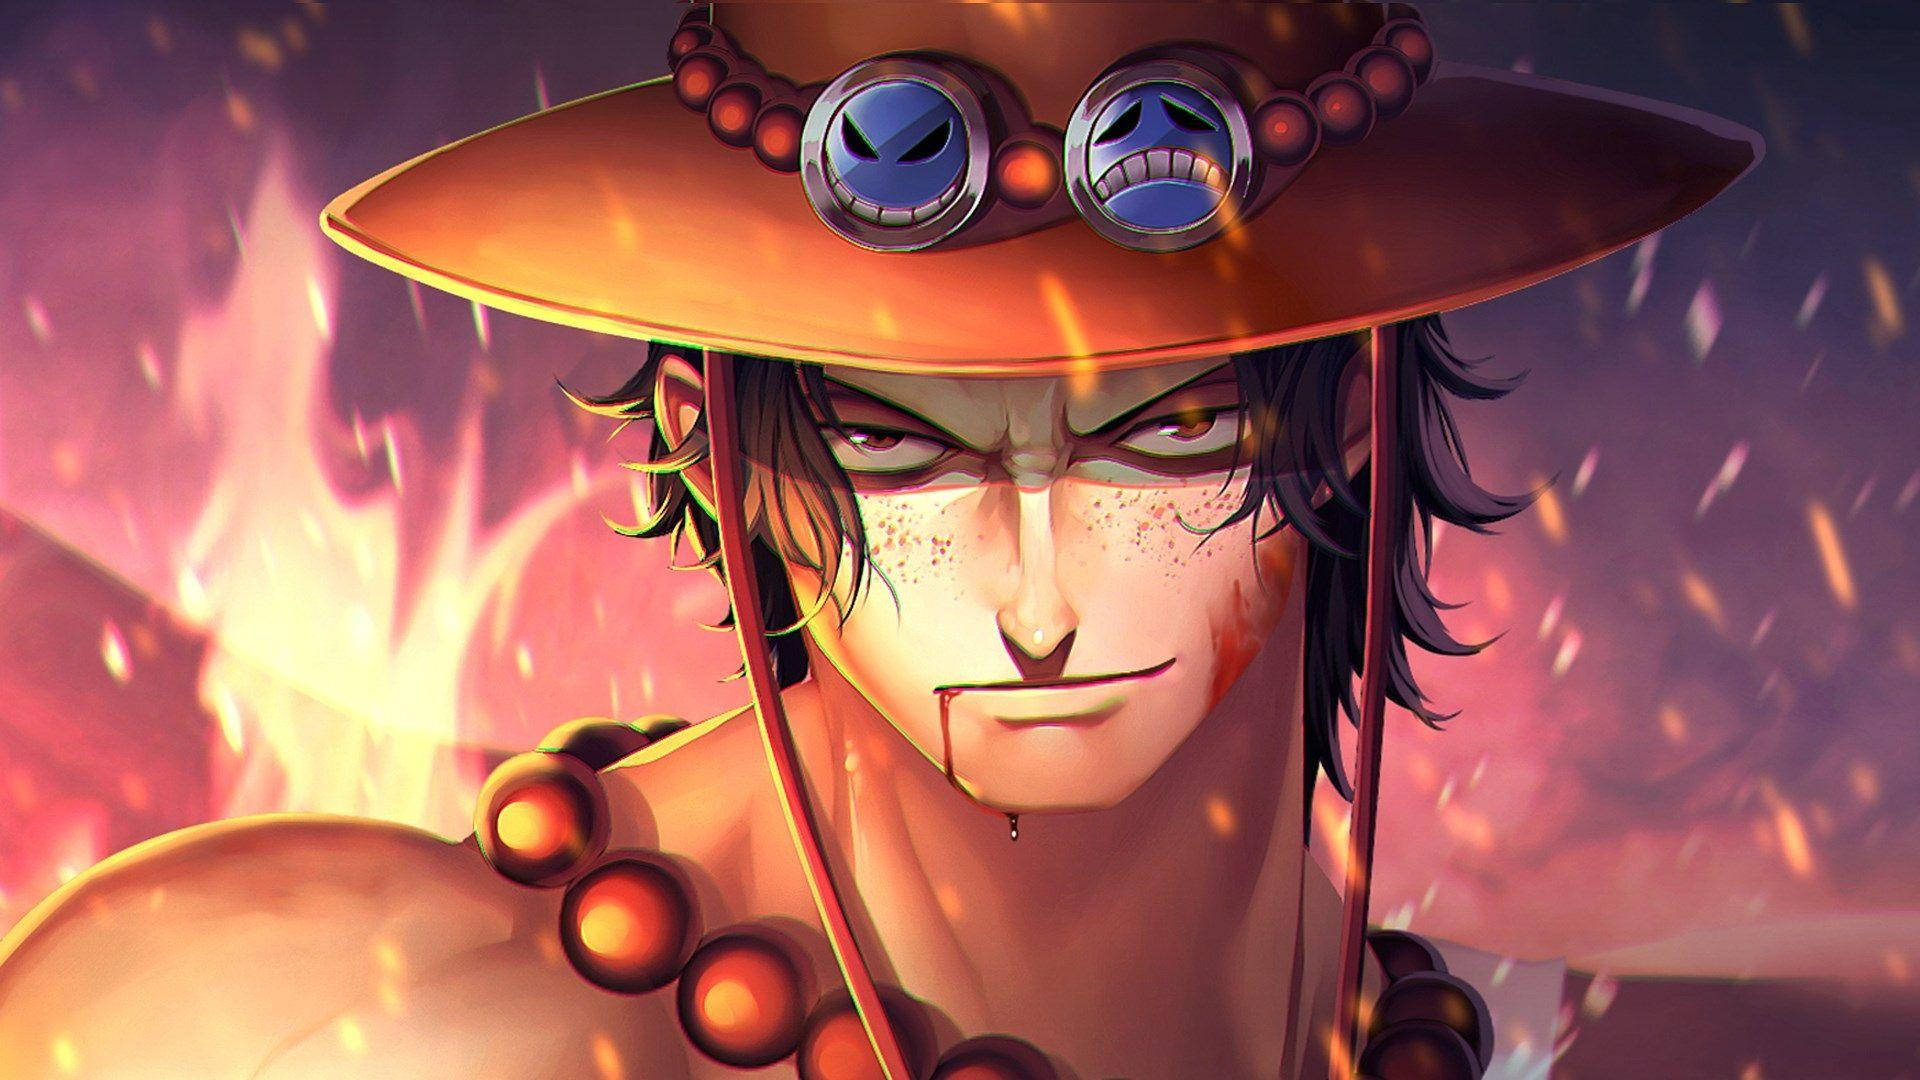 Ace là một trong những nhân vật nổi tiếng của Anime One Piece. Nếu bạn là fan của Ace, hãy tải ngay hình nền Ace trong Anime One Piece để trang trí cho chiếc máy tính của bạn. Hình ảnh rõ nét và đẹp mắt của Ace sẽ khiến bạn đắm chìm trong thế giới One Piece.